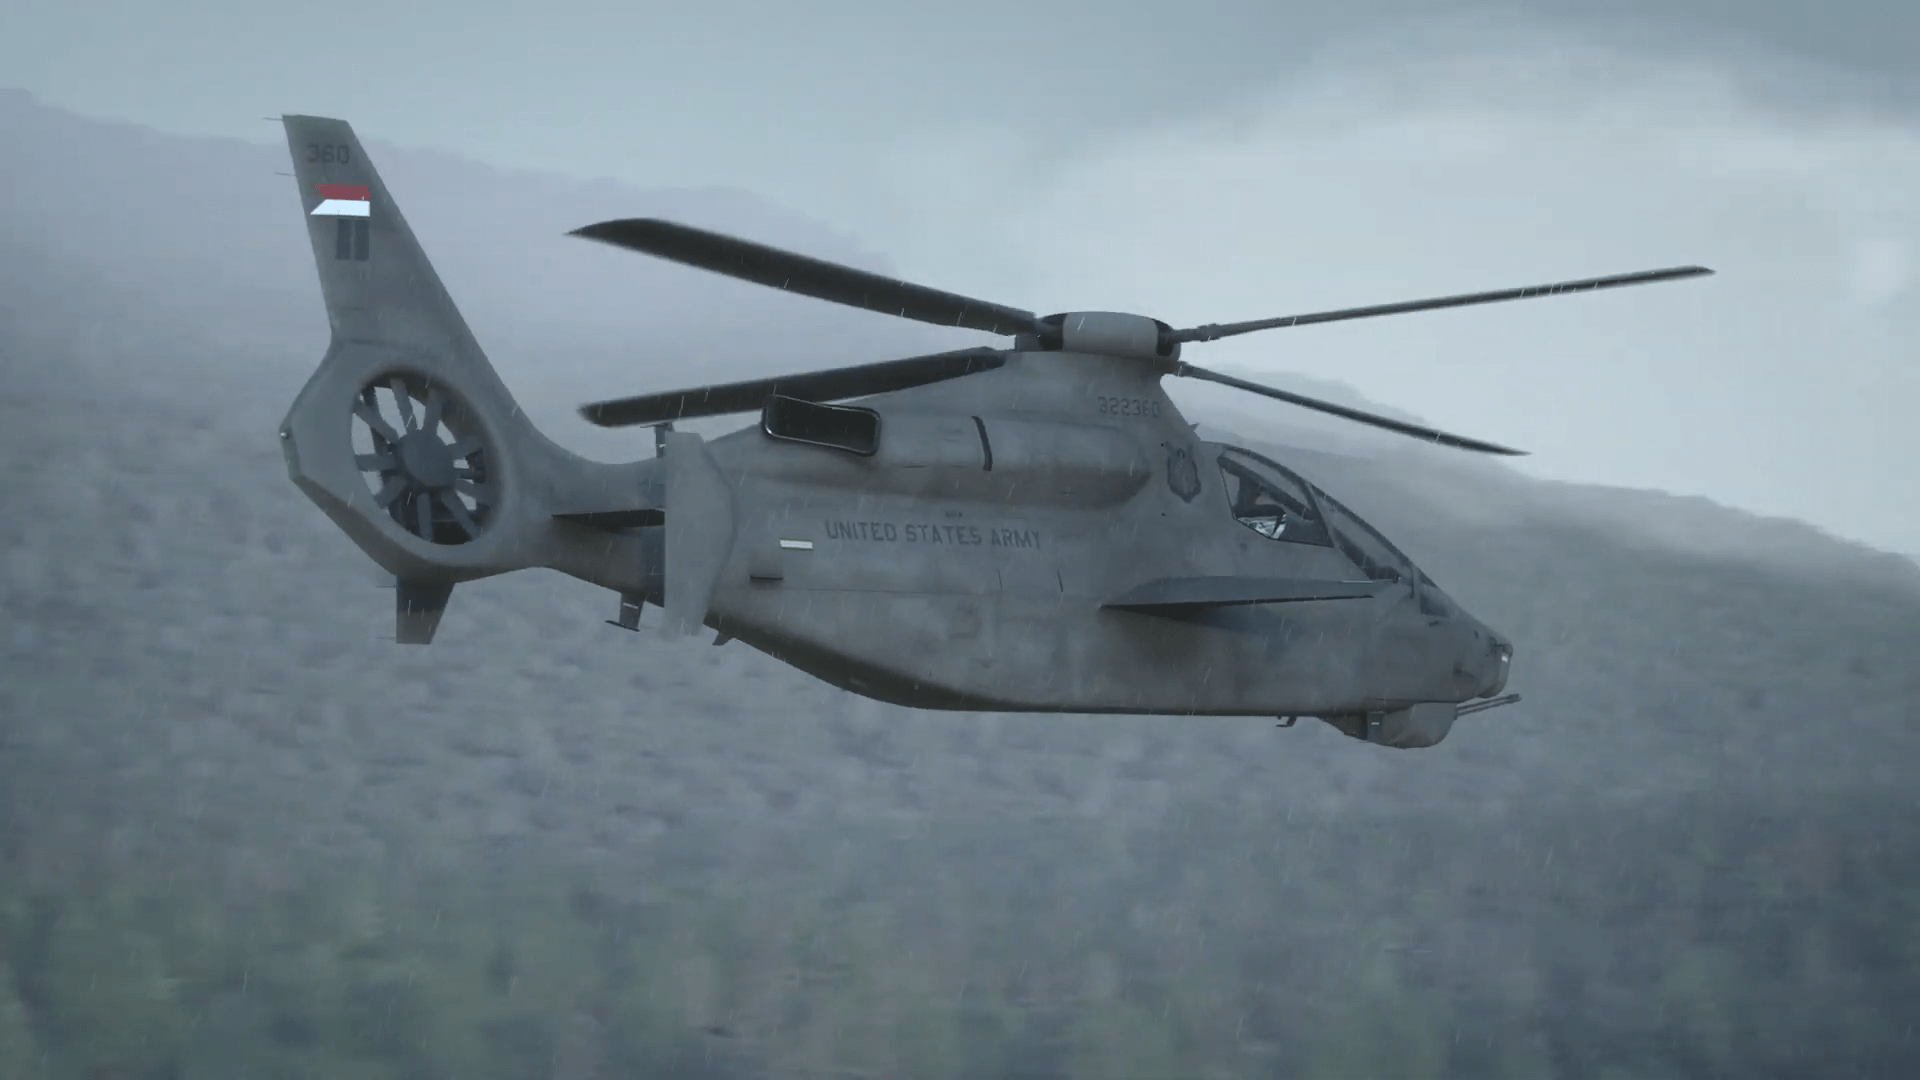 贝尔"360 必胜"攻击侦察直升机艺术概念图上述两种飞行器,要么是